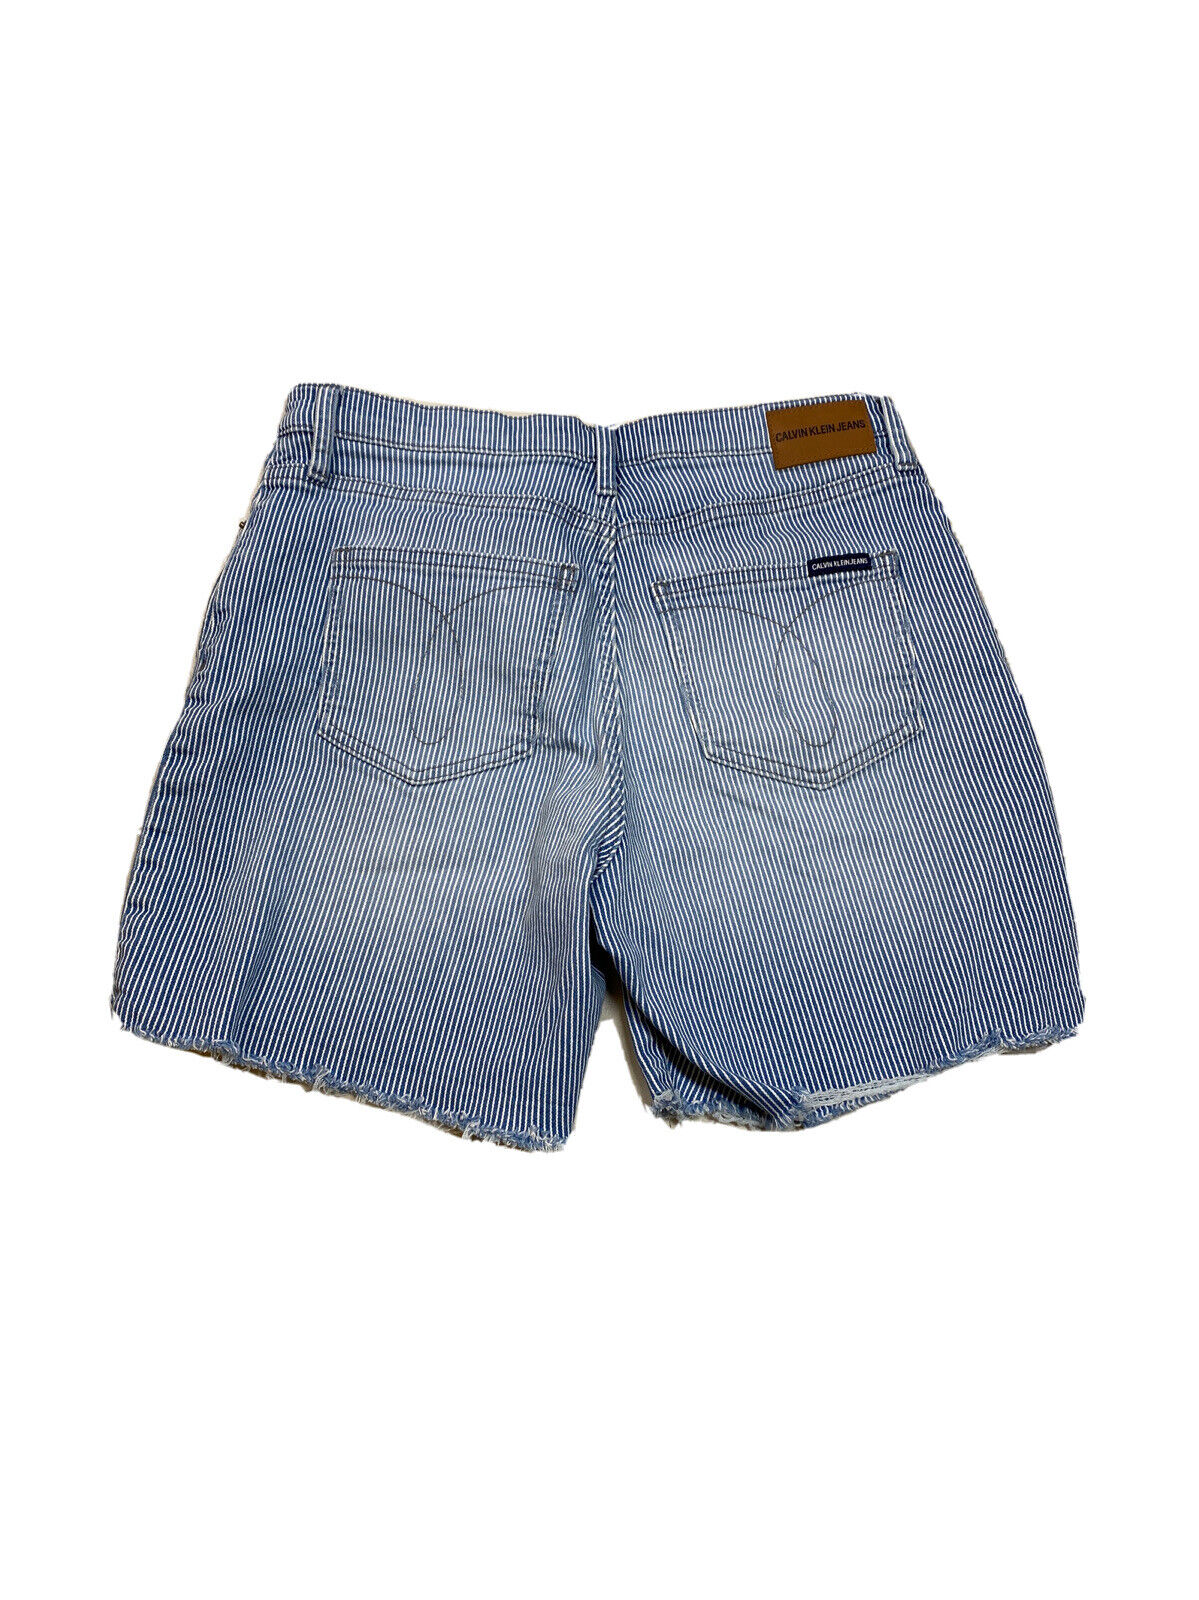 Calvin Klein pantalones cortos de talle alto a rayas azules/blancos para mujer - 6